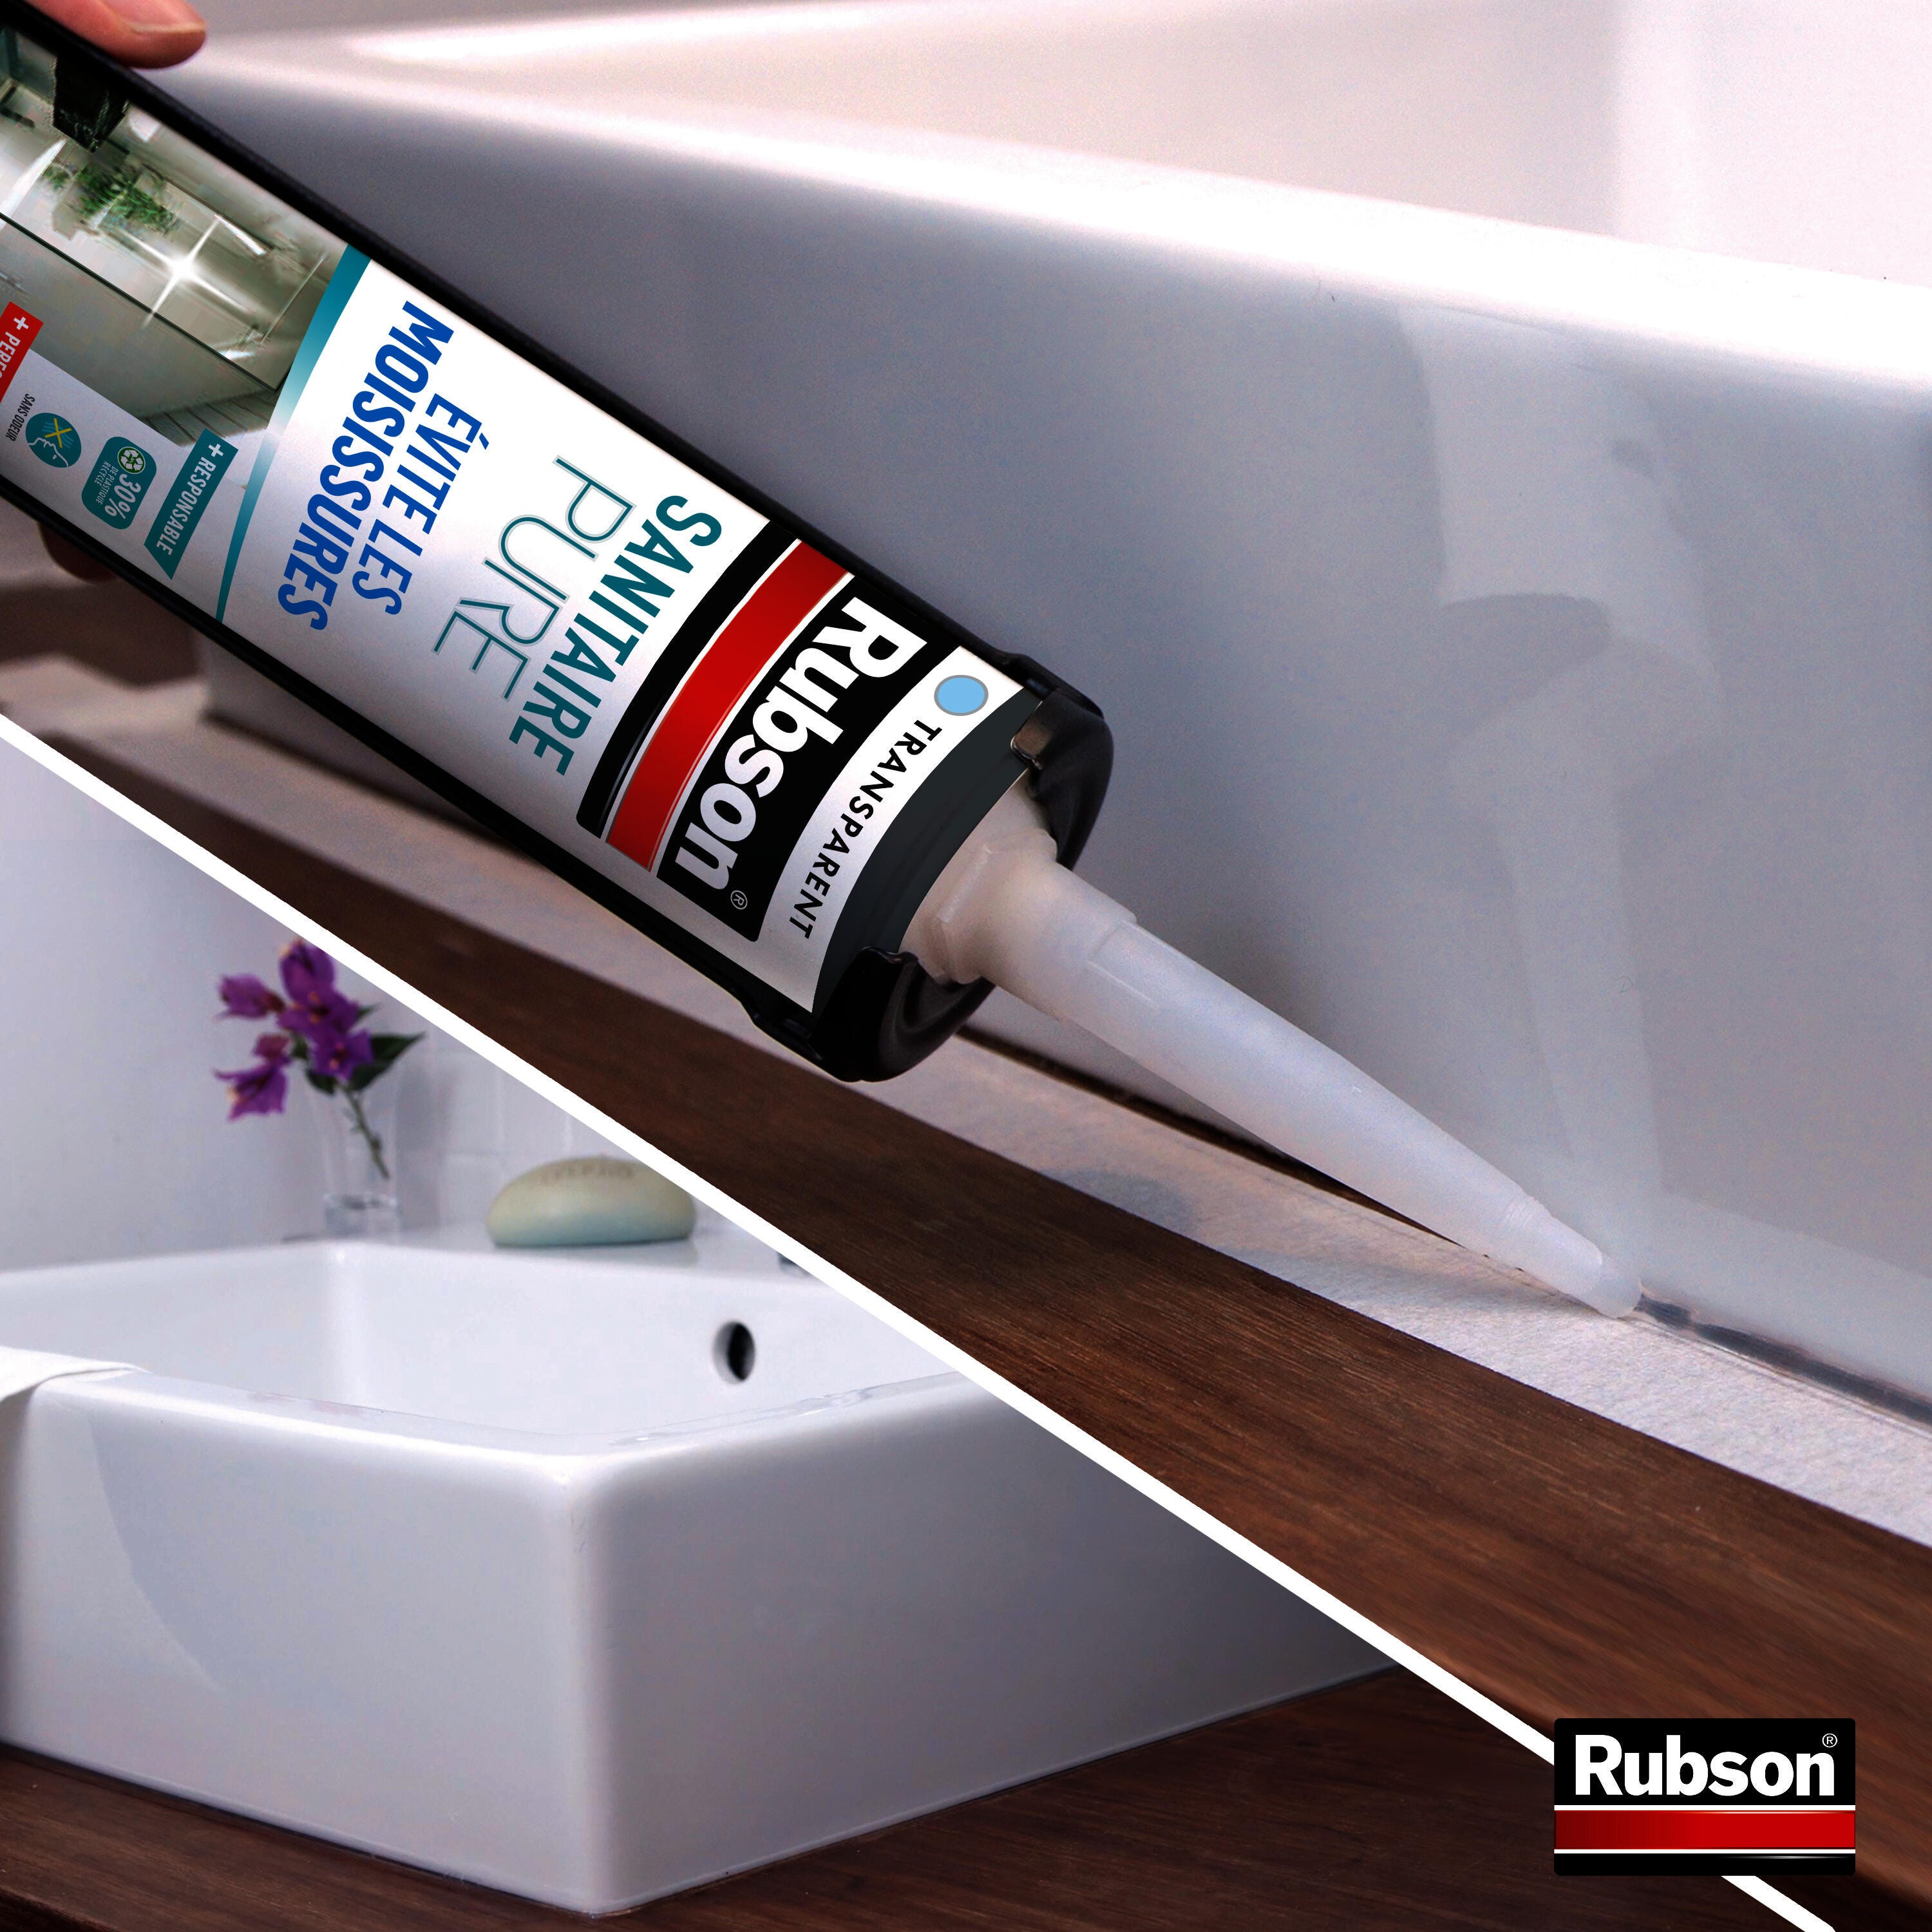 Cutter lisseur pour joint silicone de salle de bains, RUBSON